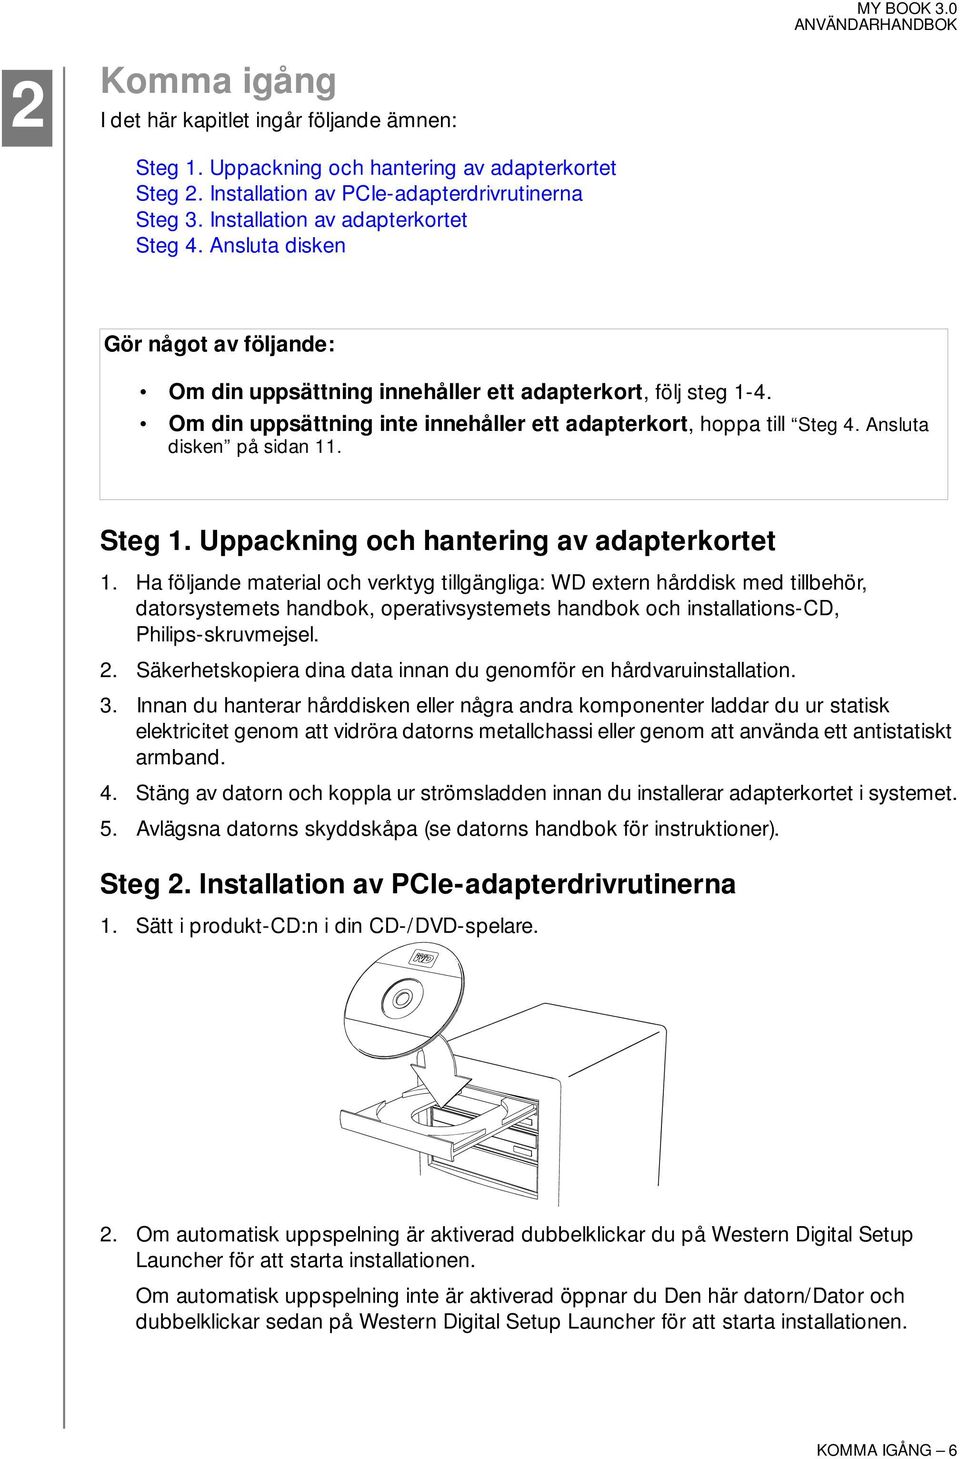 Om din uppsättning inte innehåller ett adapterkort, hoppa till Steg 4. Ansluta disken på sidan 11. Steg 1. Uppackning och hantering av adapterkortet 1.